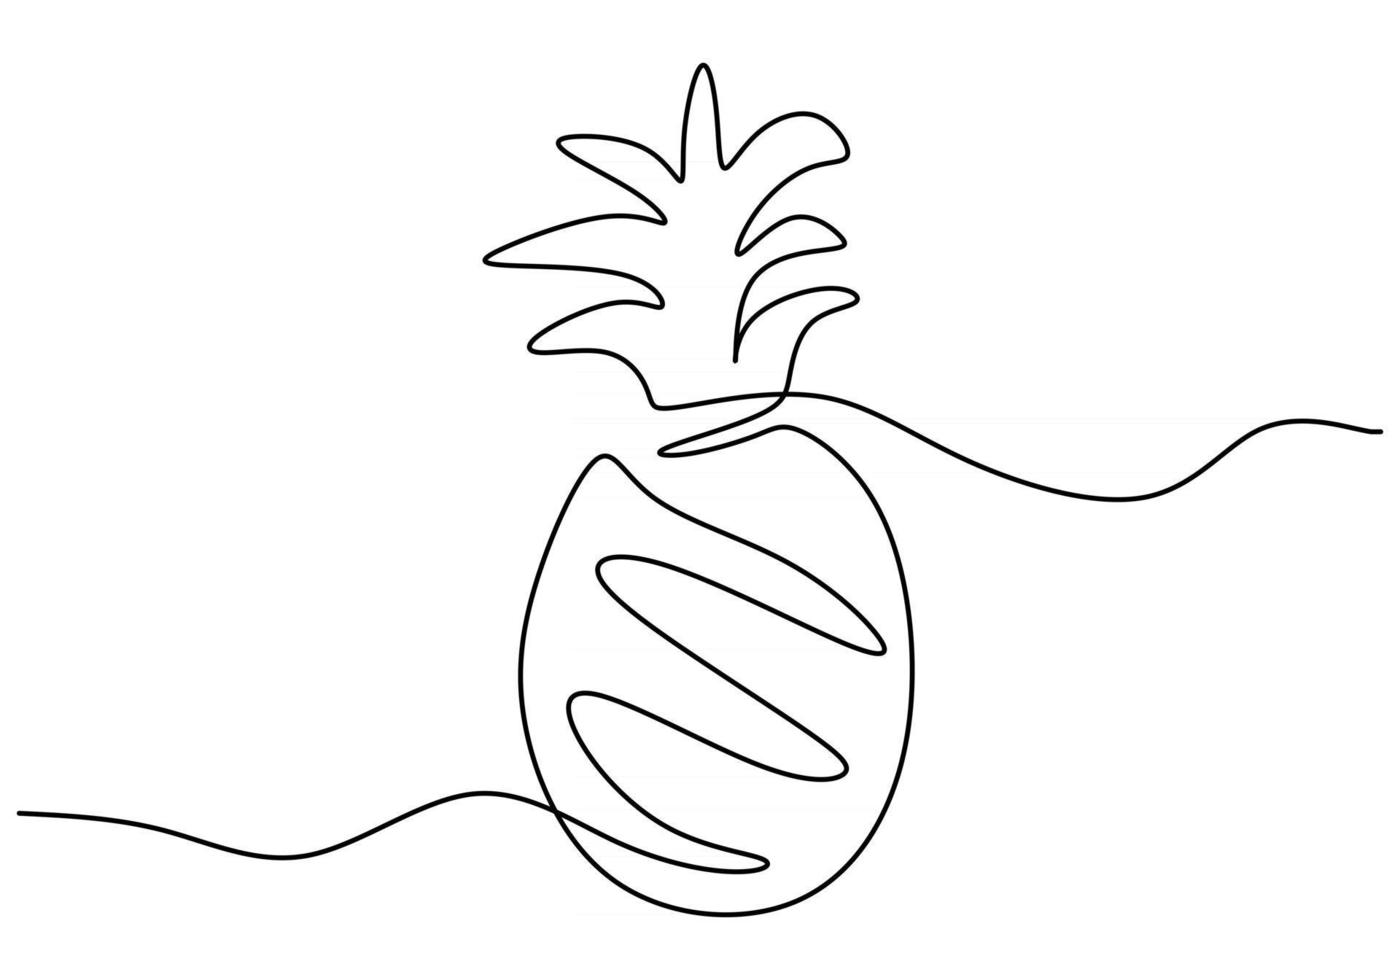 eine durchgehende Strichzeichnung von Ananas handgezeichnete minimalistische Linie vektor